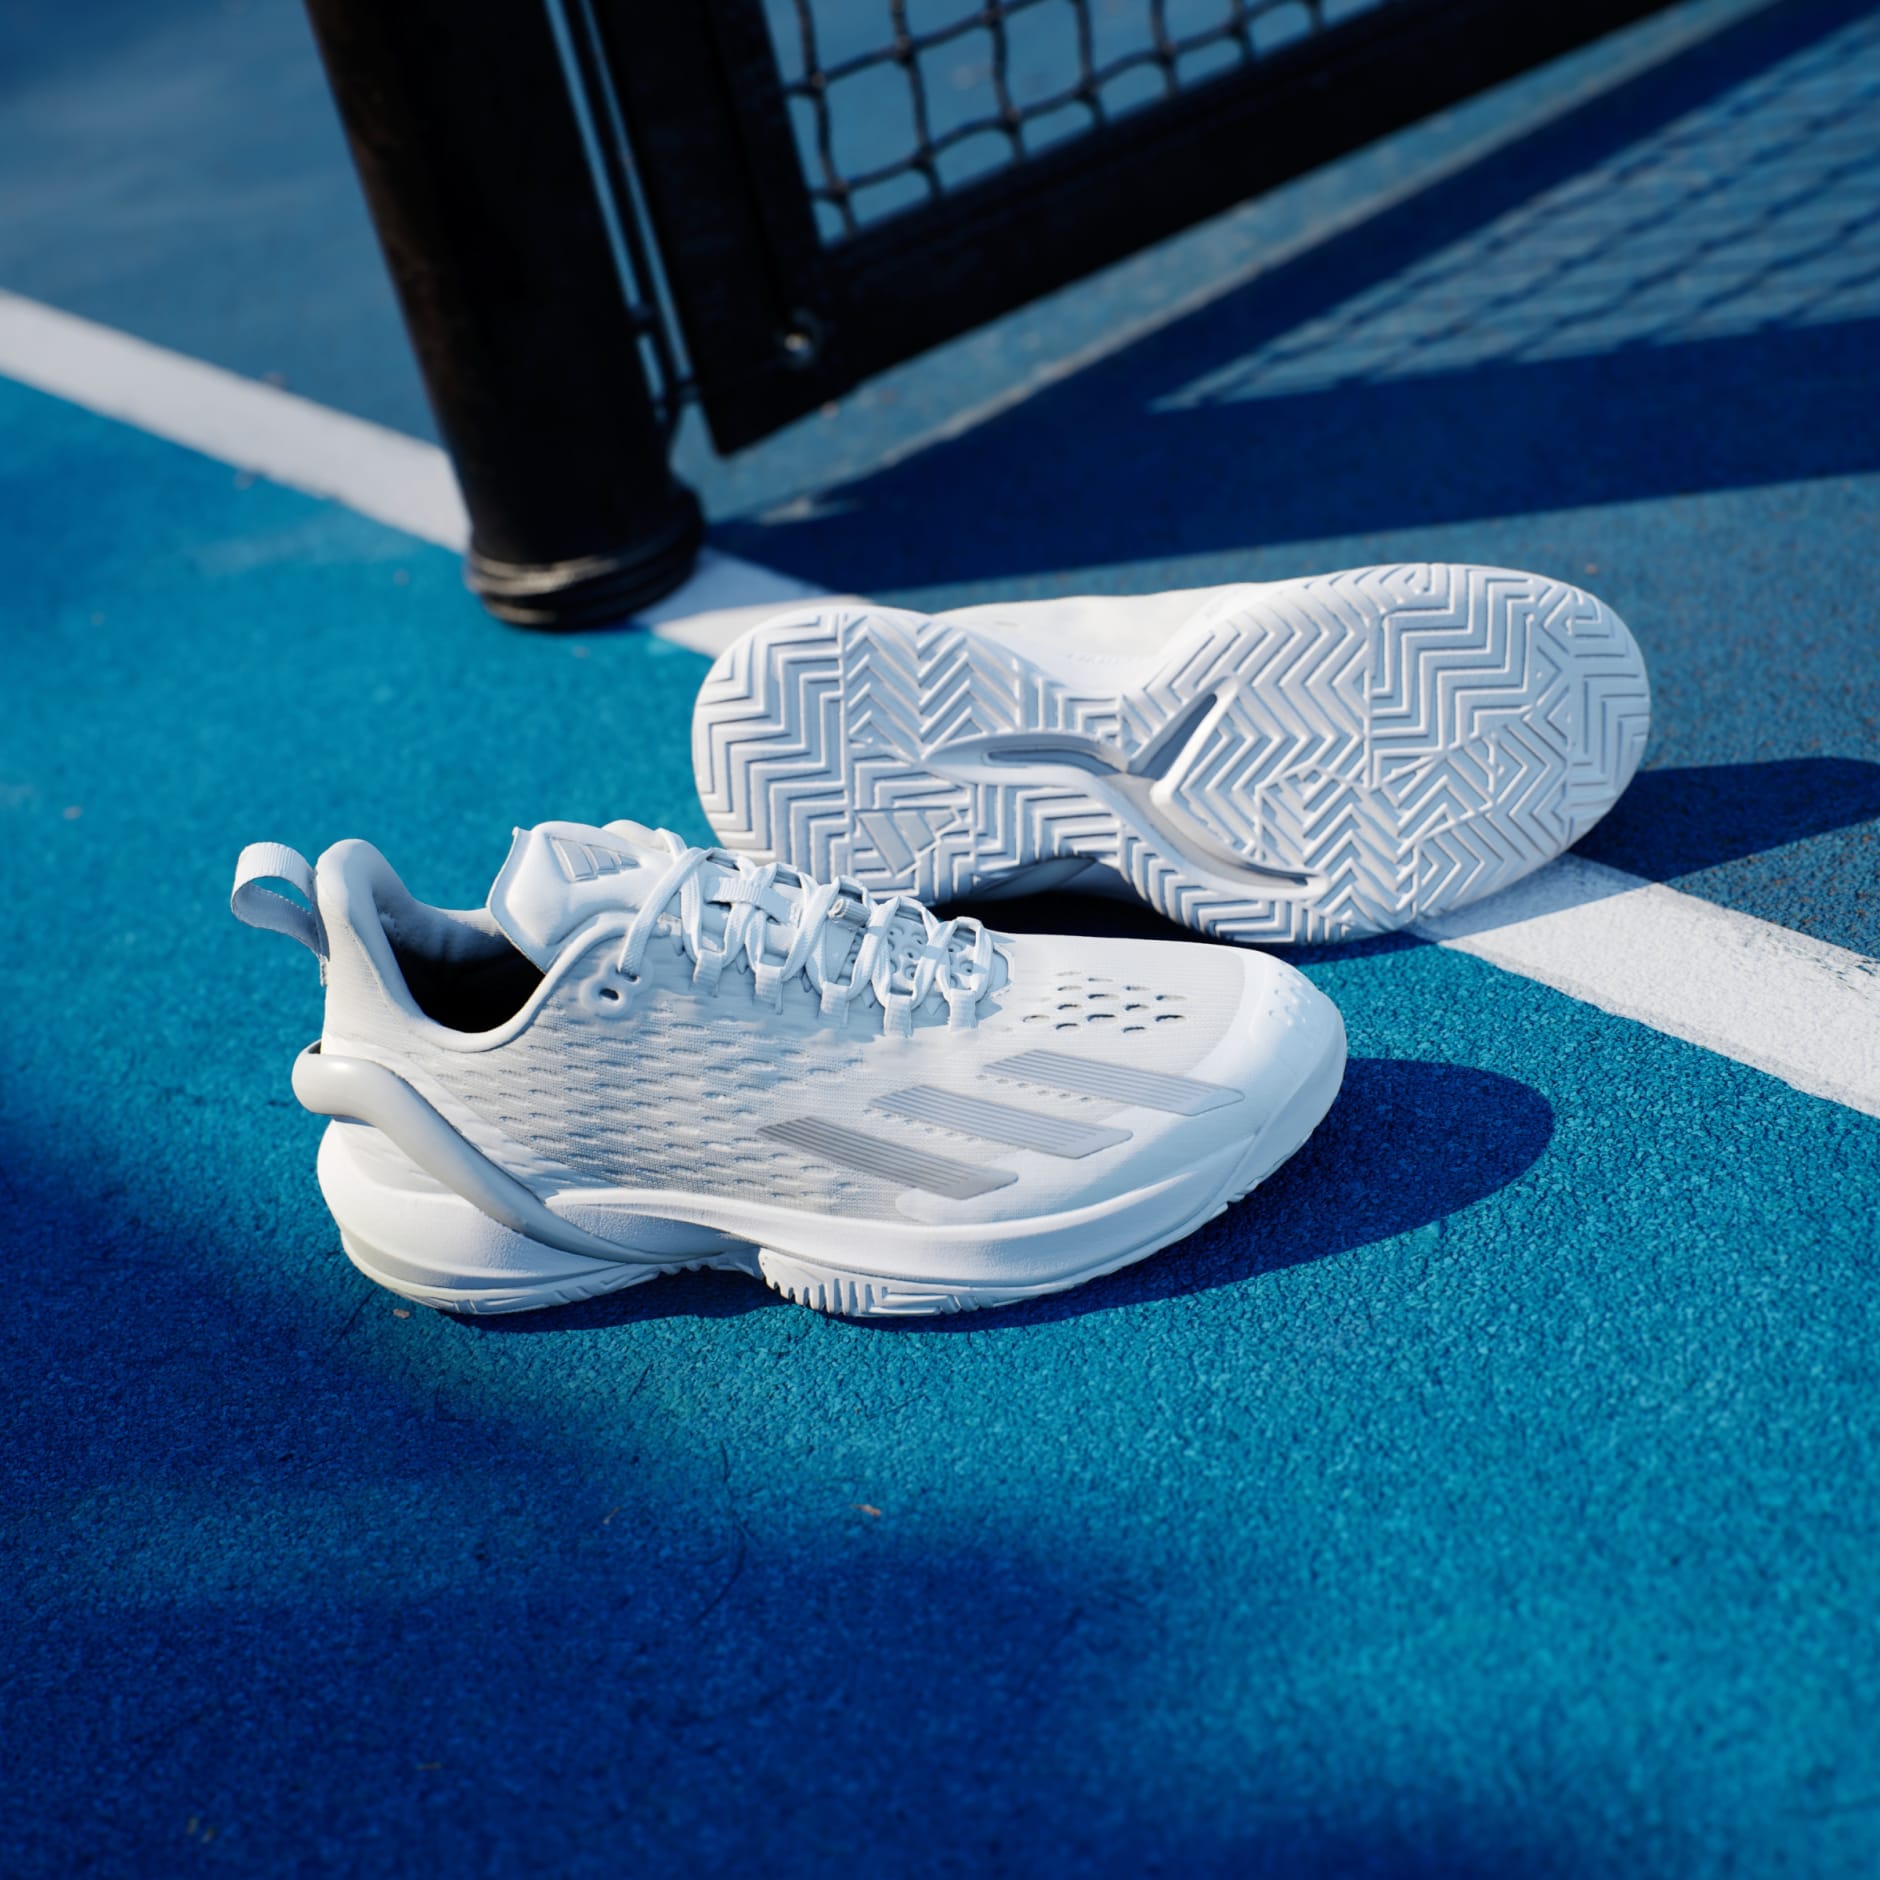 adidas Adizero Cybersonic Tennis Shoes - White